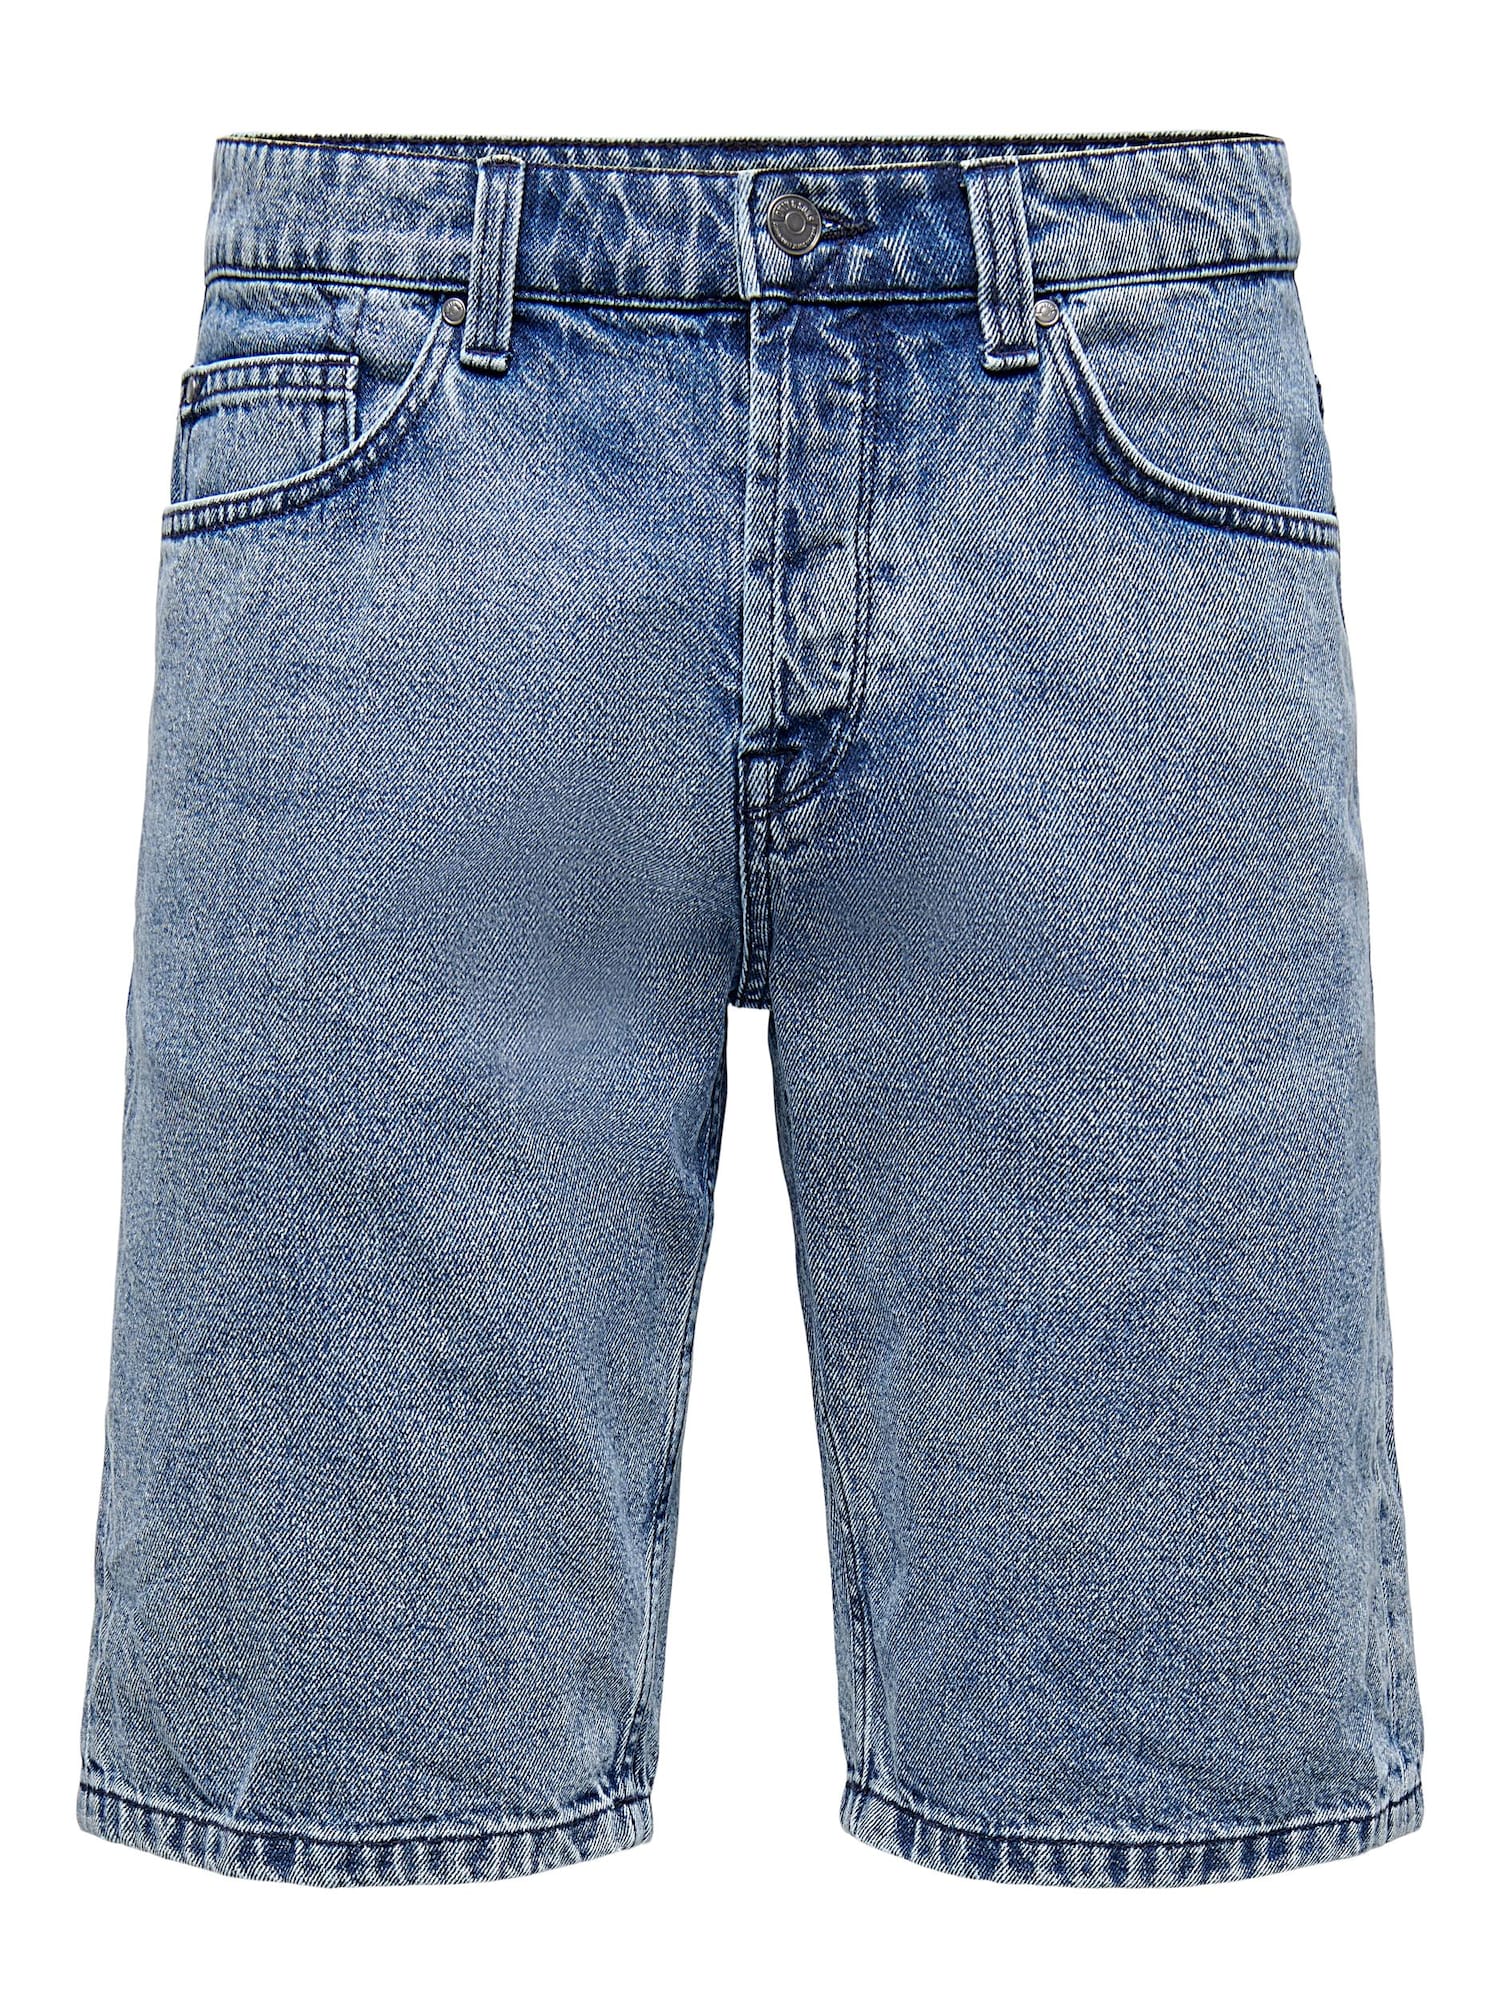 Only & Sons Shorts ''''AVI'''' blue denim